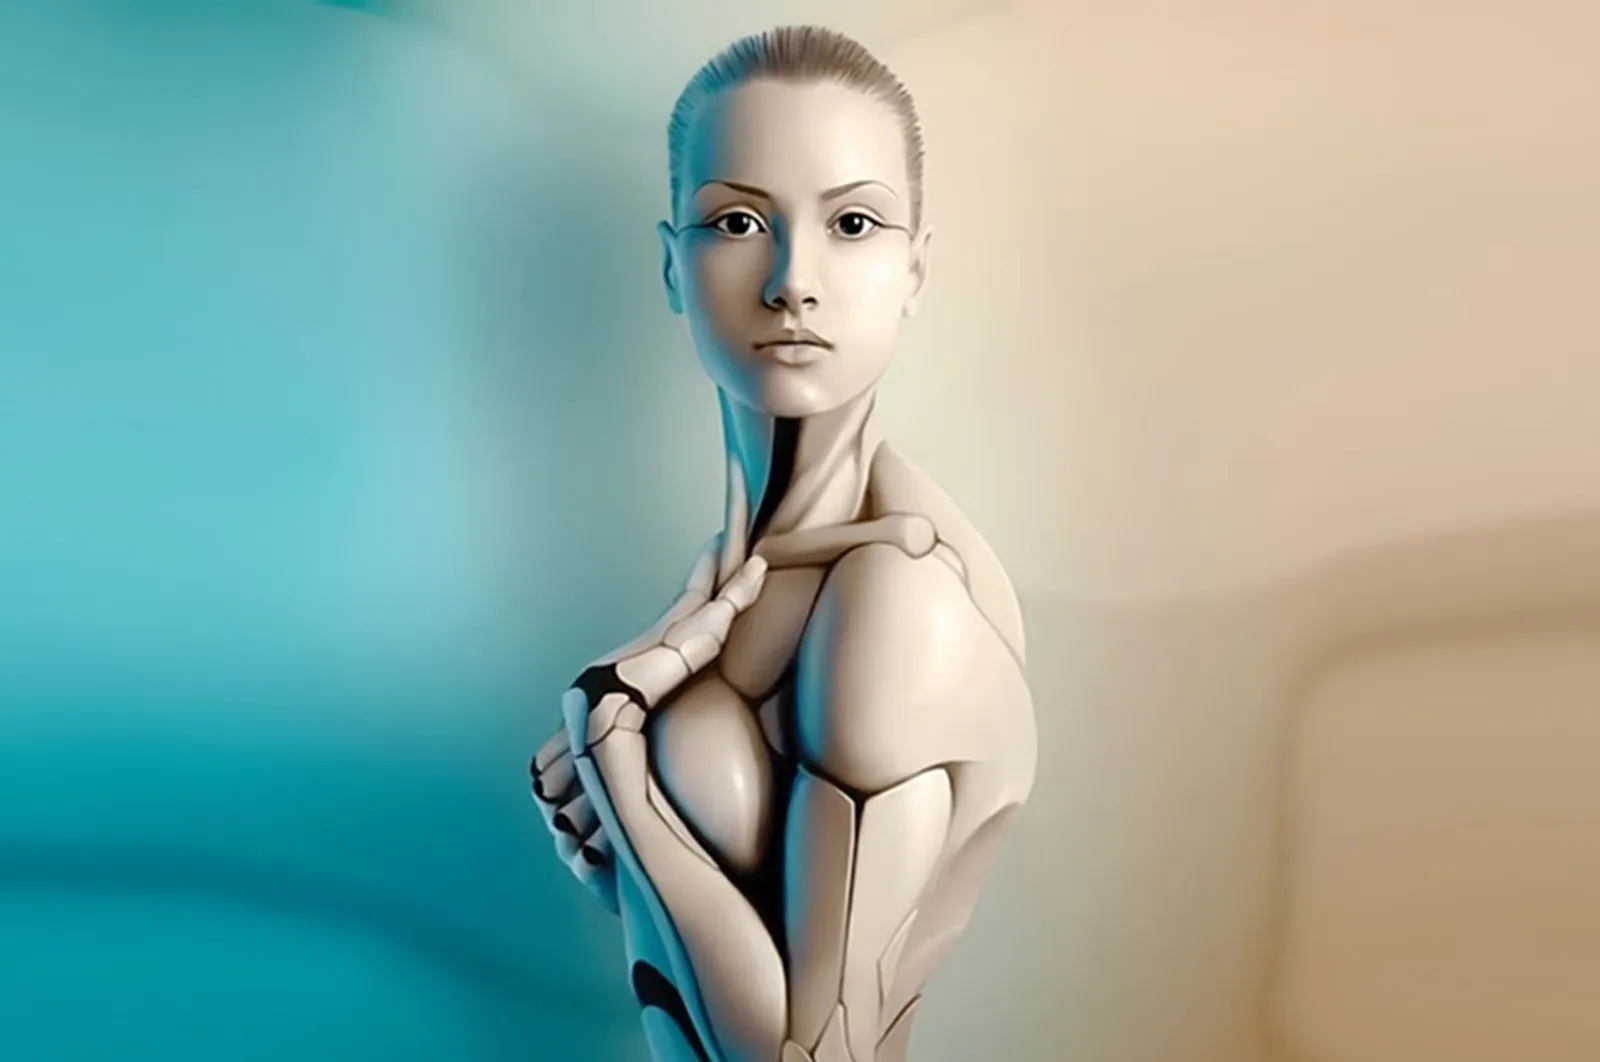 Digiseksual, Ketika Kepuasan Seksual Bisa Terpenuhi dengan Robot